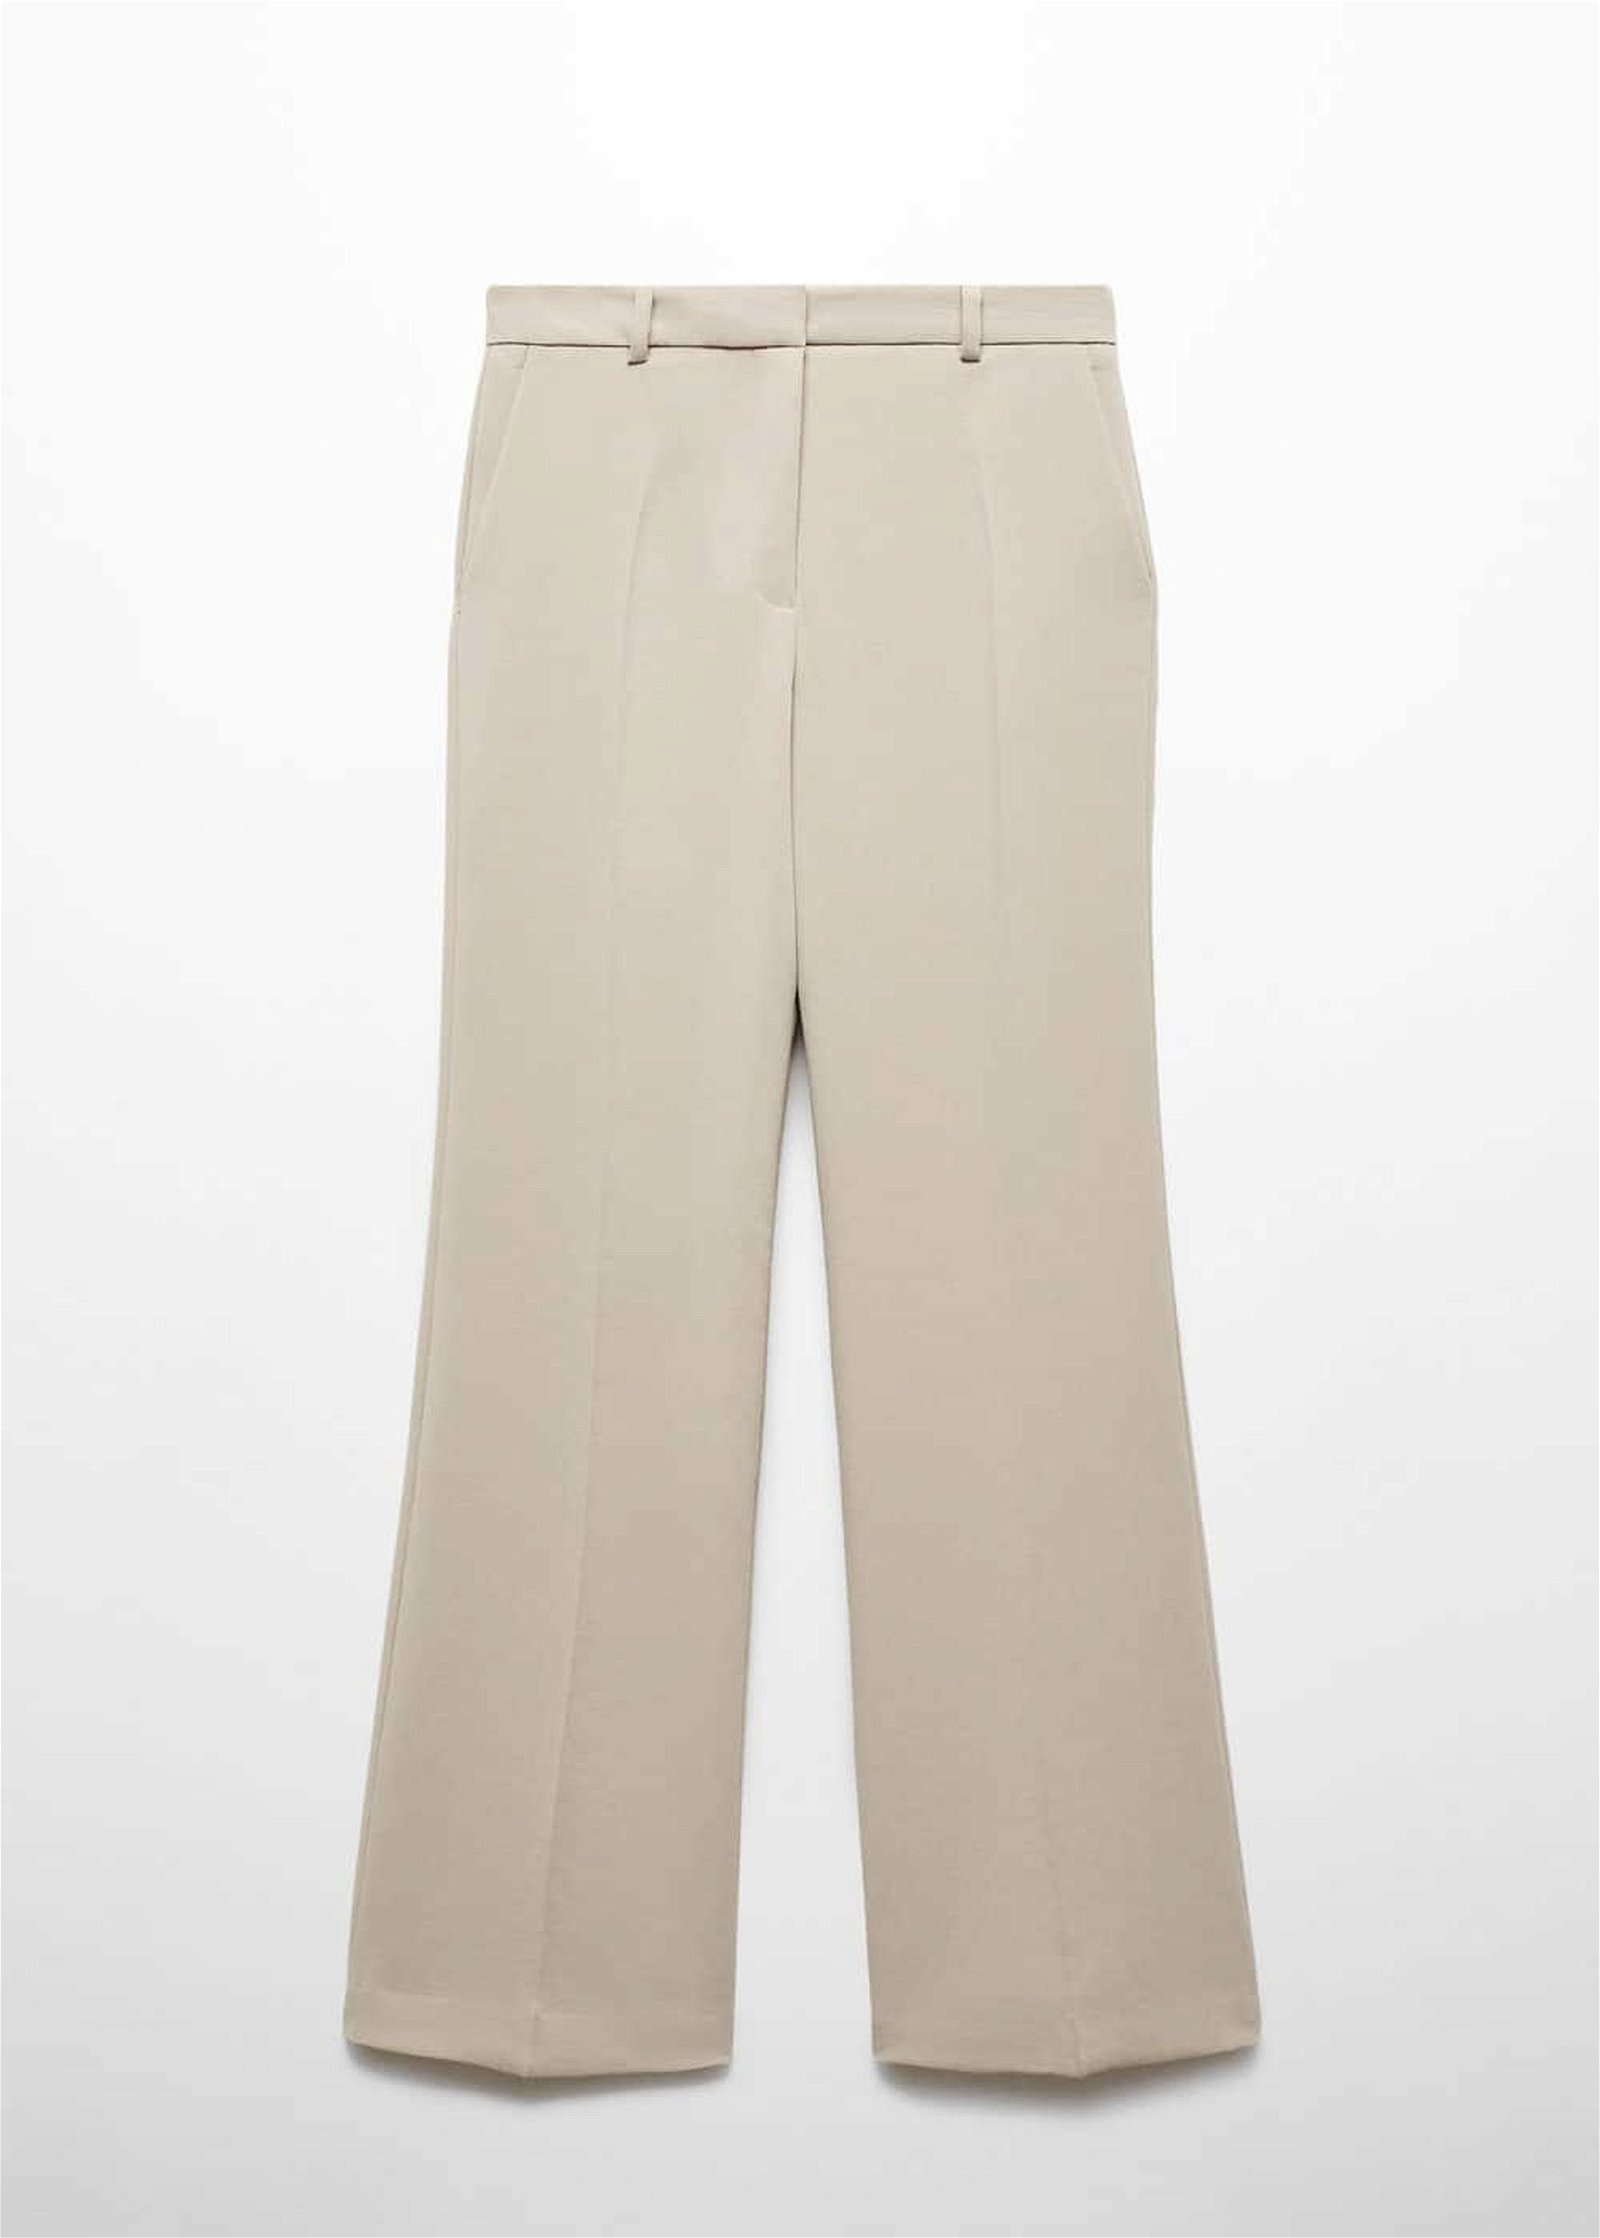 Mango Kadın Yüksek Belli Wideleg Pantolon Açık/Pastel Gri